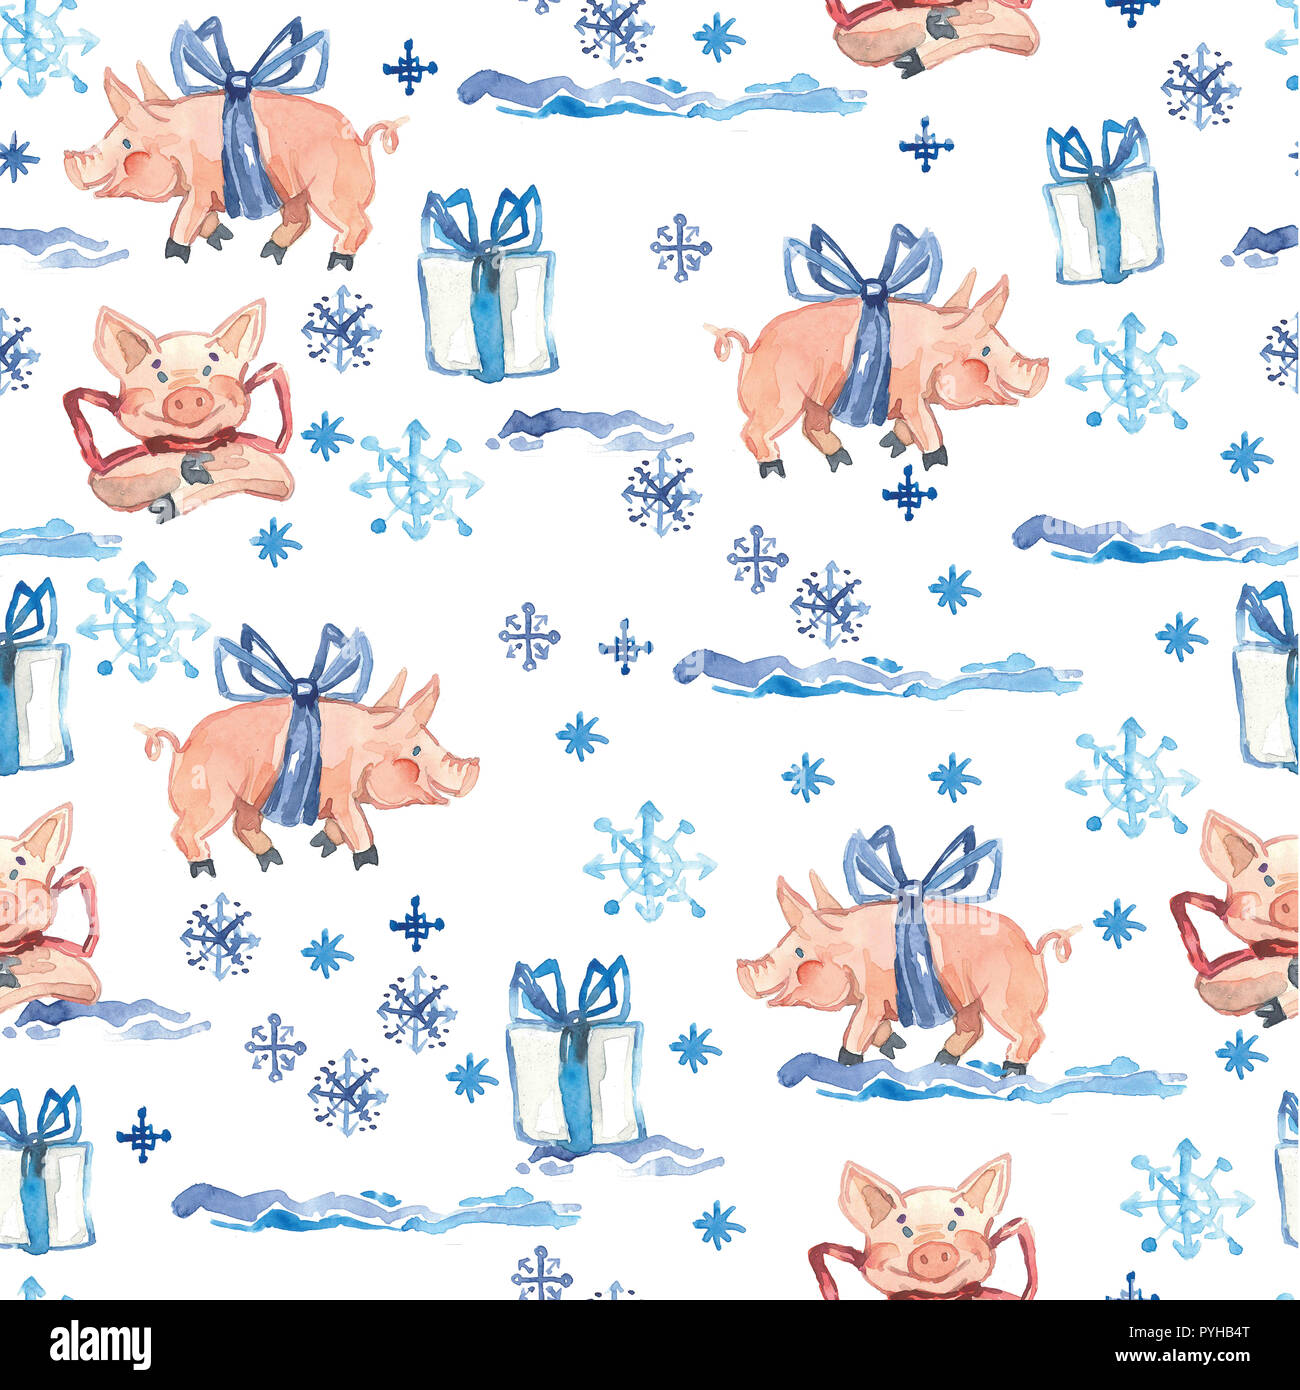 Neues Jahr nahtlose Muster mit niedlichen Schweine, Weihnachtsgeschenke und Schneeflocken. 2019 Chinesisches Jahr Symbol. Design Element für Textil, Verpackung, Scrapbooking oder Tapeten. Stockfoto